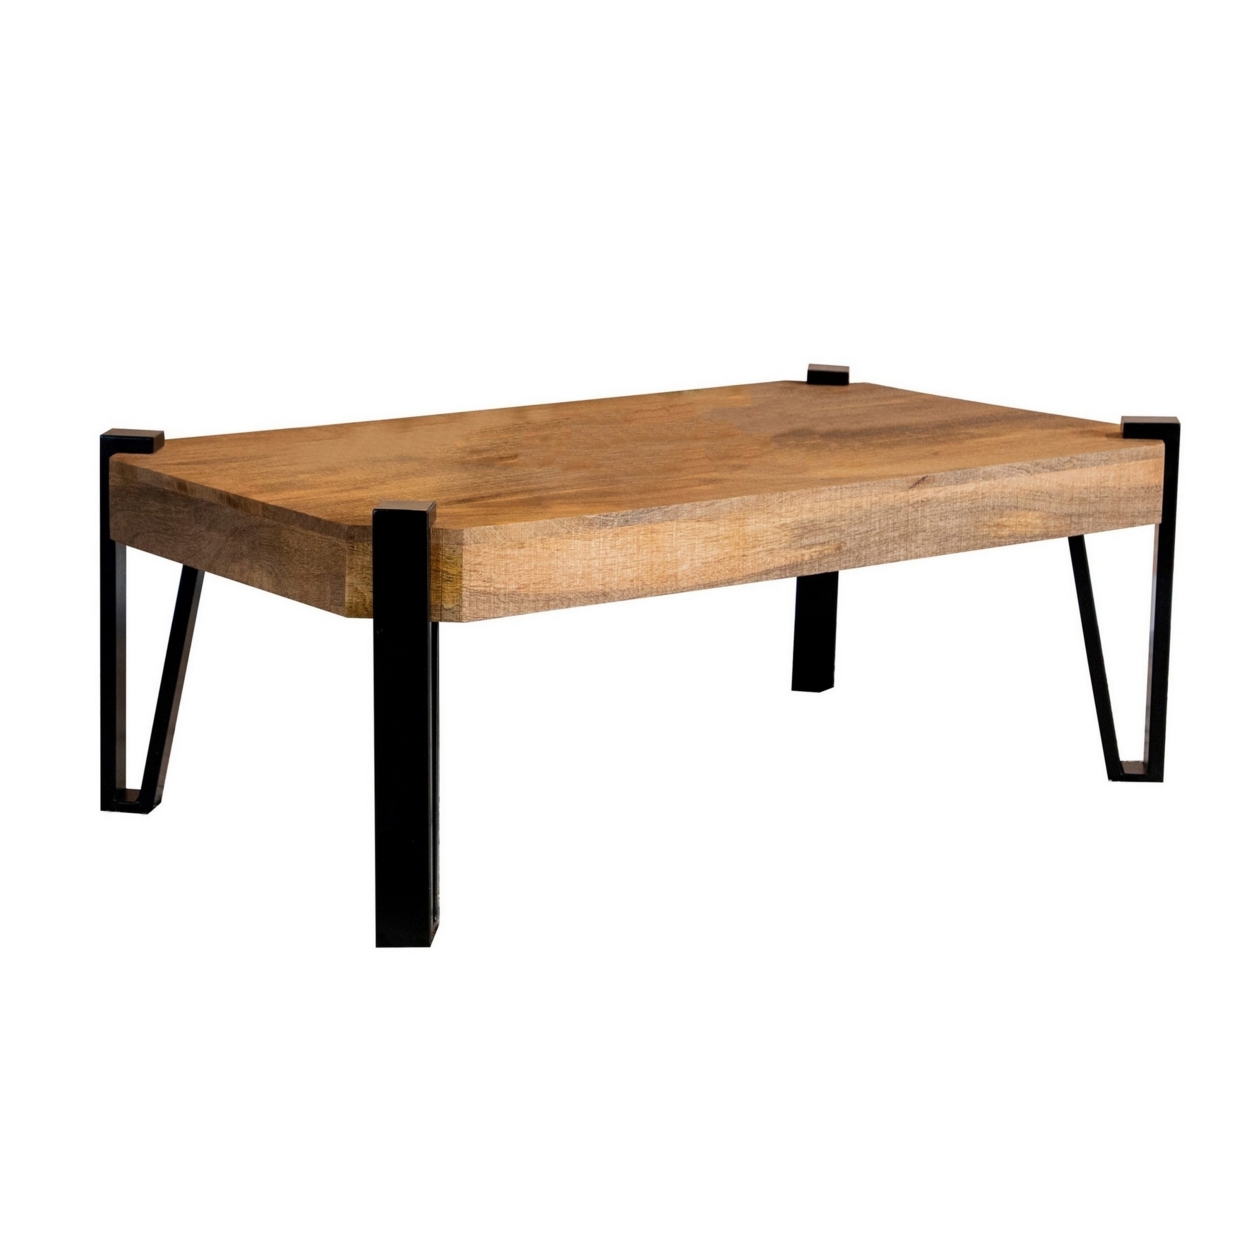 Ayla 50 Inch Coffee Table, Iron Hairpin Legs, Rustic Brown Mango Wood